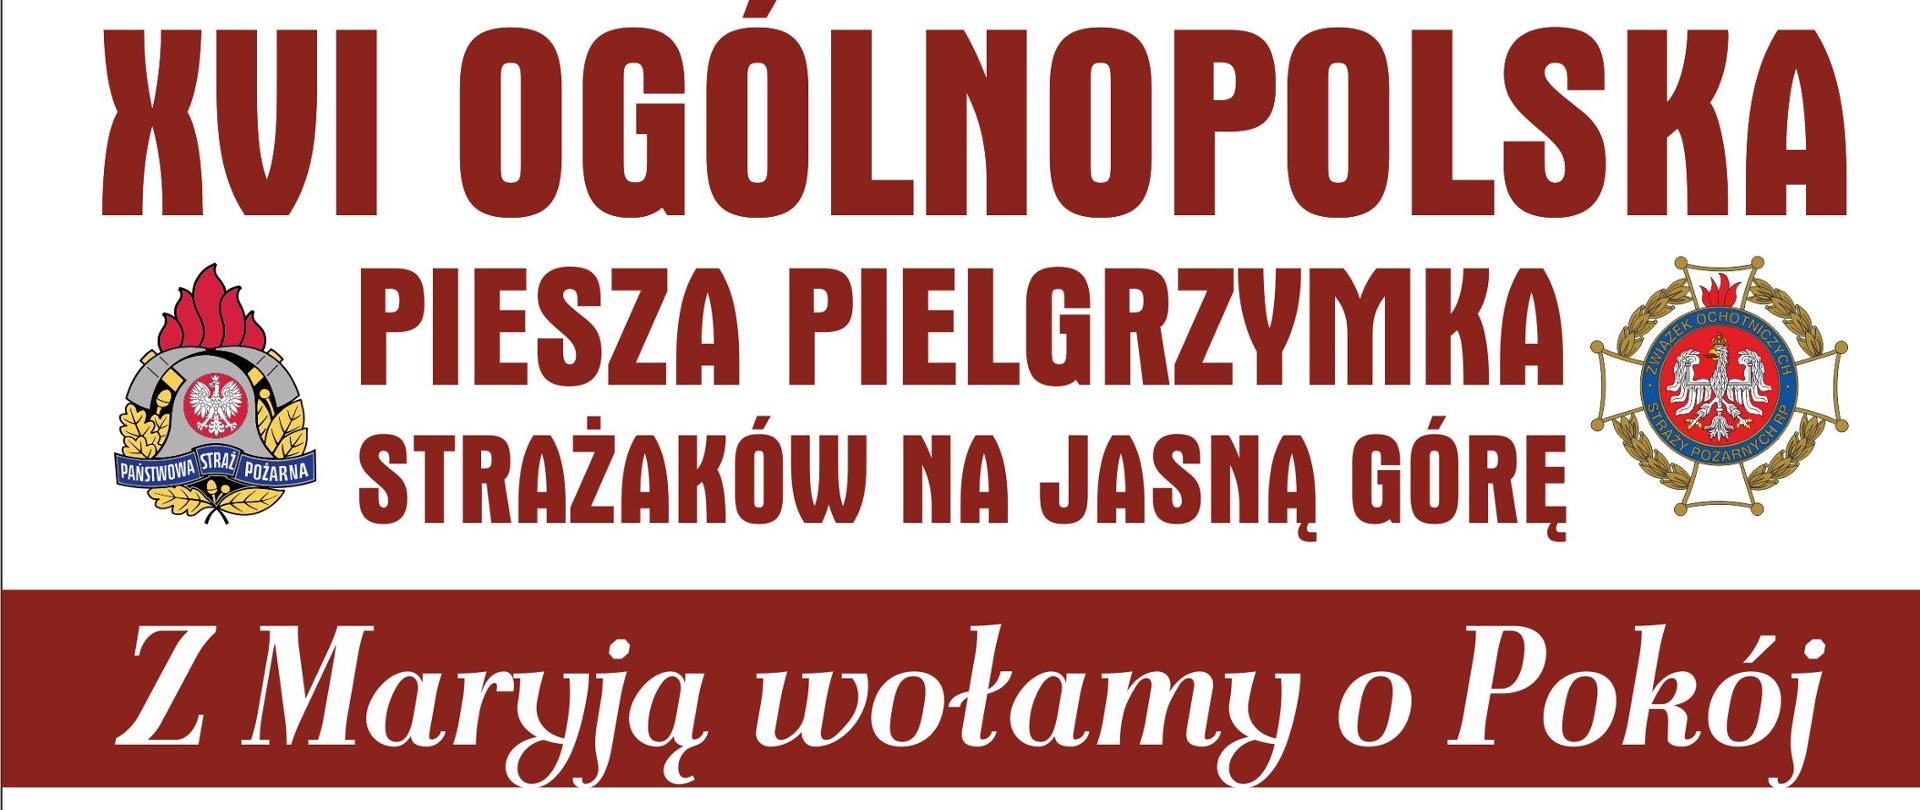 Zdjęcie przedstawia plakat dotyczący XVI Ogólnopolskiej Pieszej Pielgrzymki Strażaków na Jasną Górę.